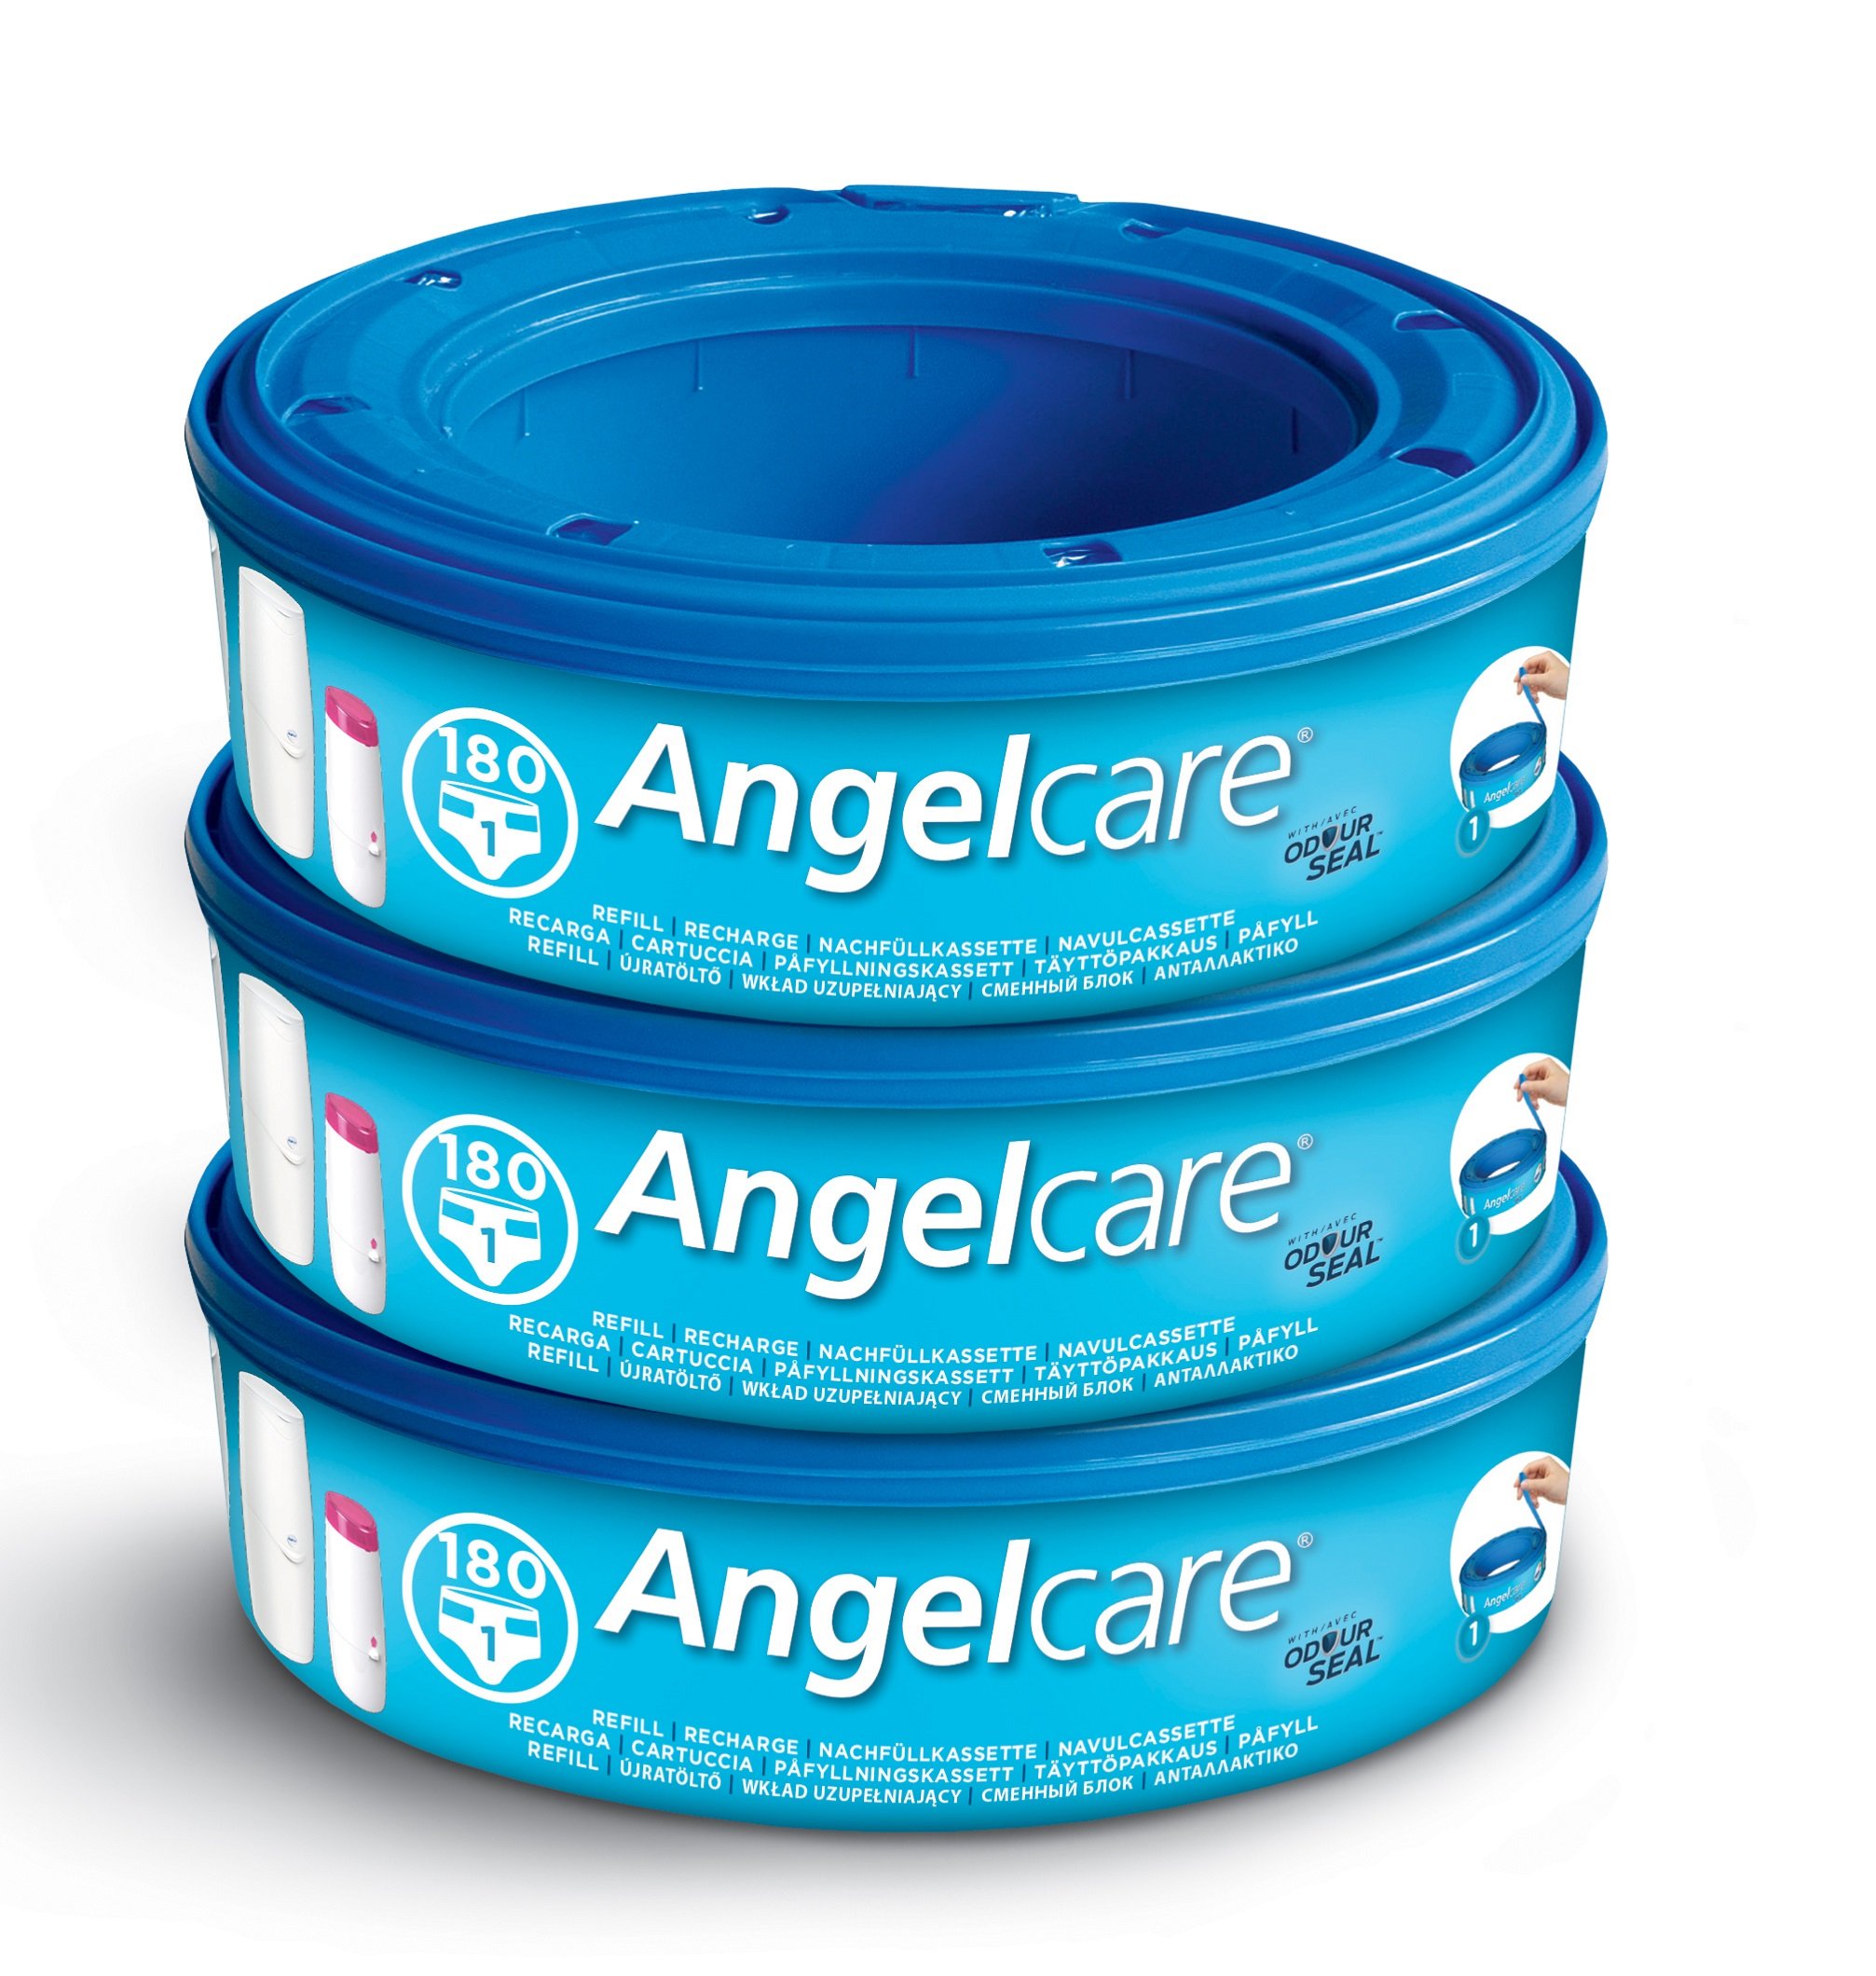 Angelcare Windeleimer Nachfüllpack Plus 3er Pack für Windeleimer Comfort, Comfort plus, Captiva und Deluxe